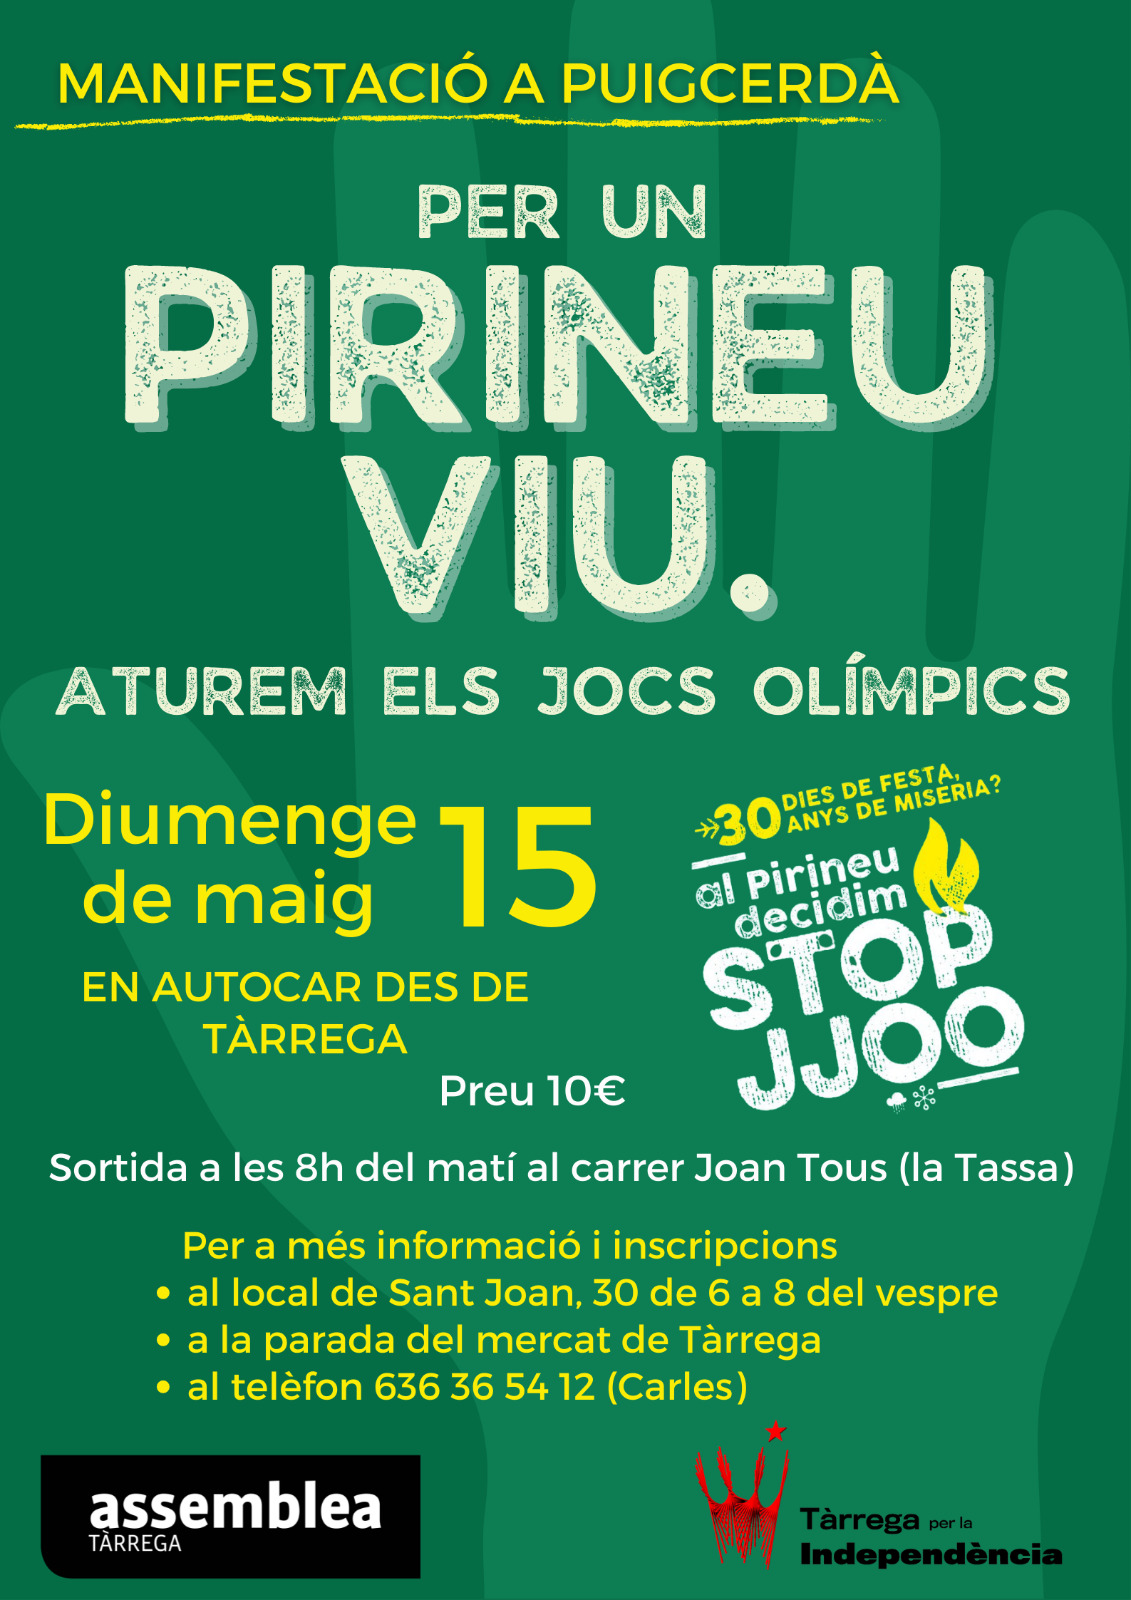 Manifestació contra els JJOO a Puigcerdà